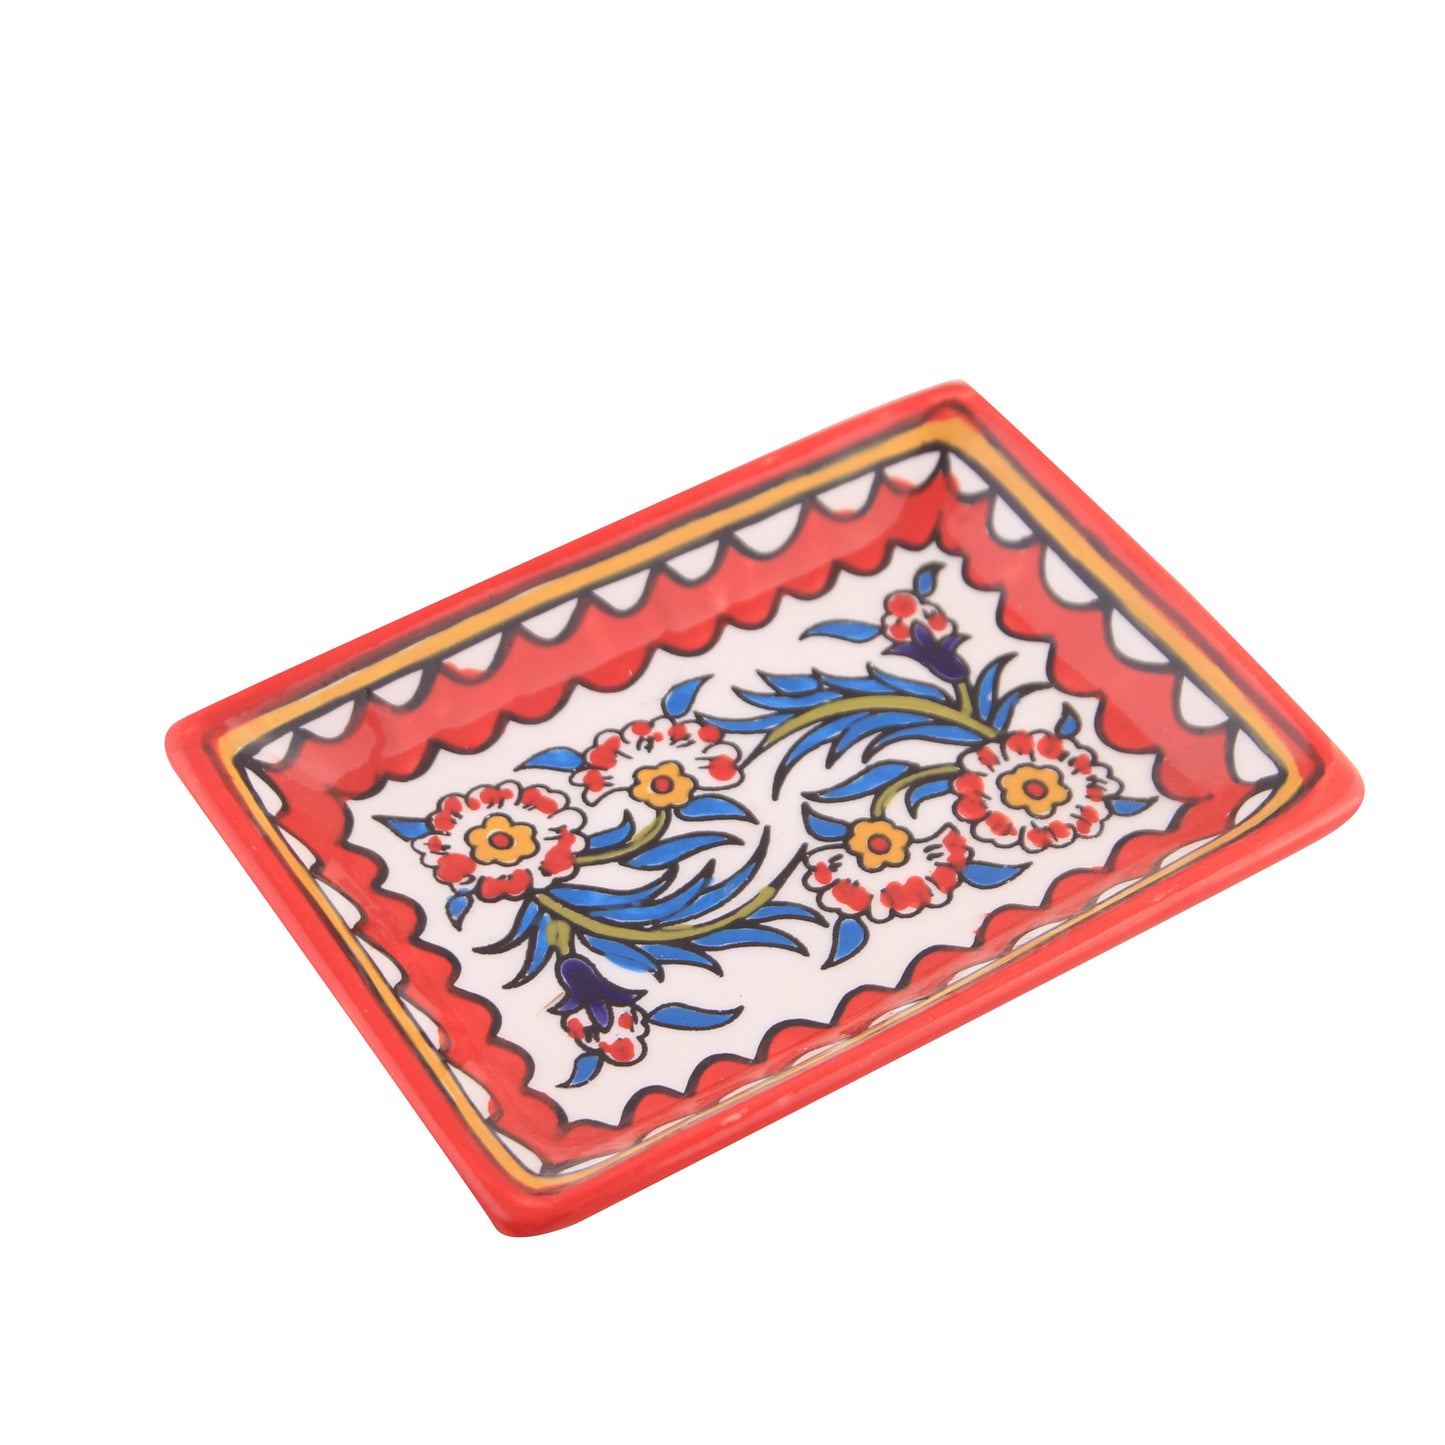 Ceramic rectangular  floral Hebron tray red motif